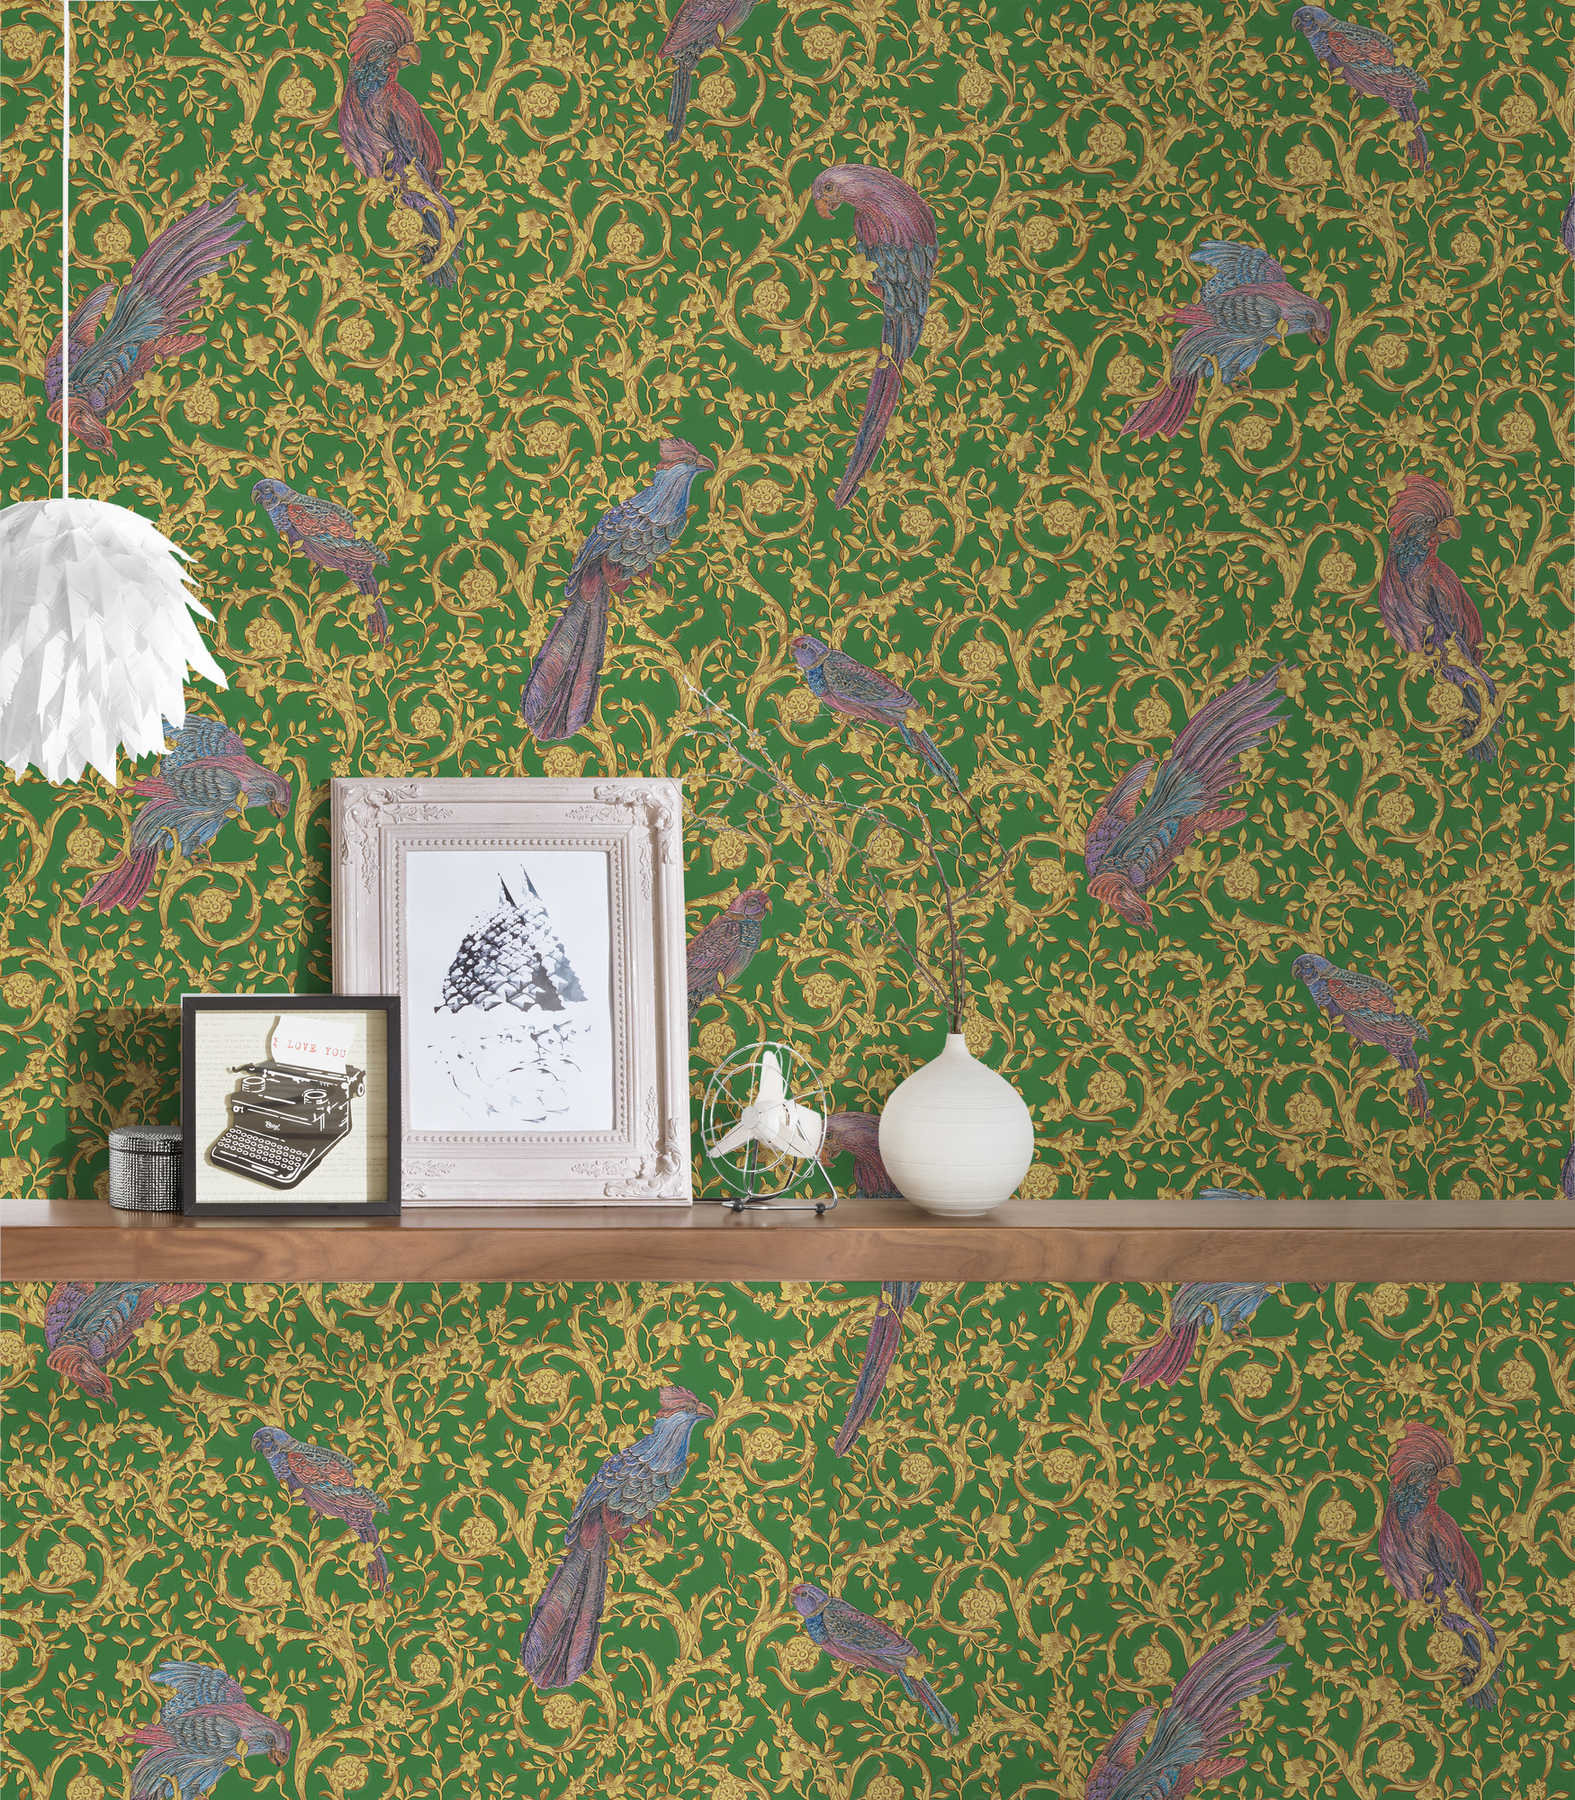             VERSACE Home behang paradise birds & gouden accenten - goud, groen, paars
        